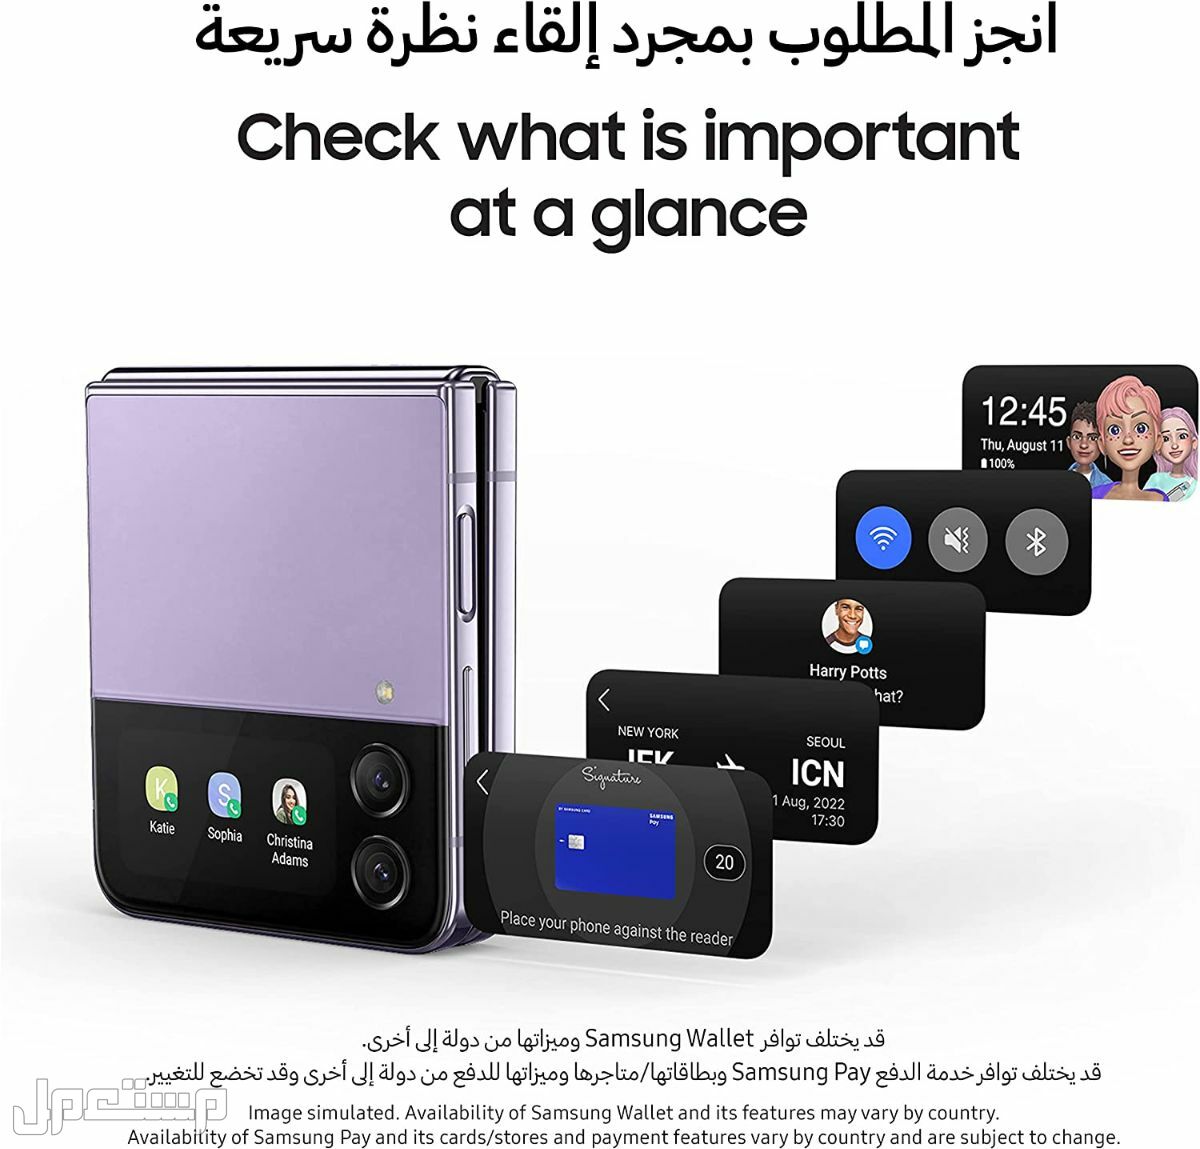 جوال جلاكسي: تعرف على مواصفات وأسعار وأهم مميزات جوال جلاكسي في الإمارات العربية المتحدة هاتف جلاكسي